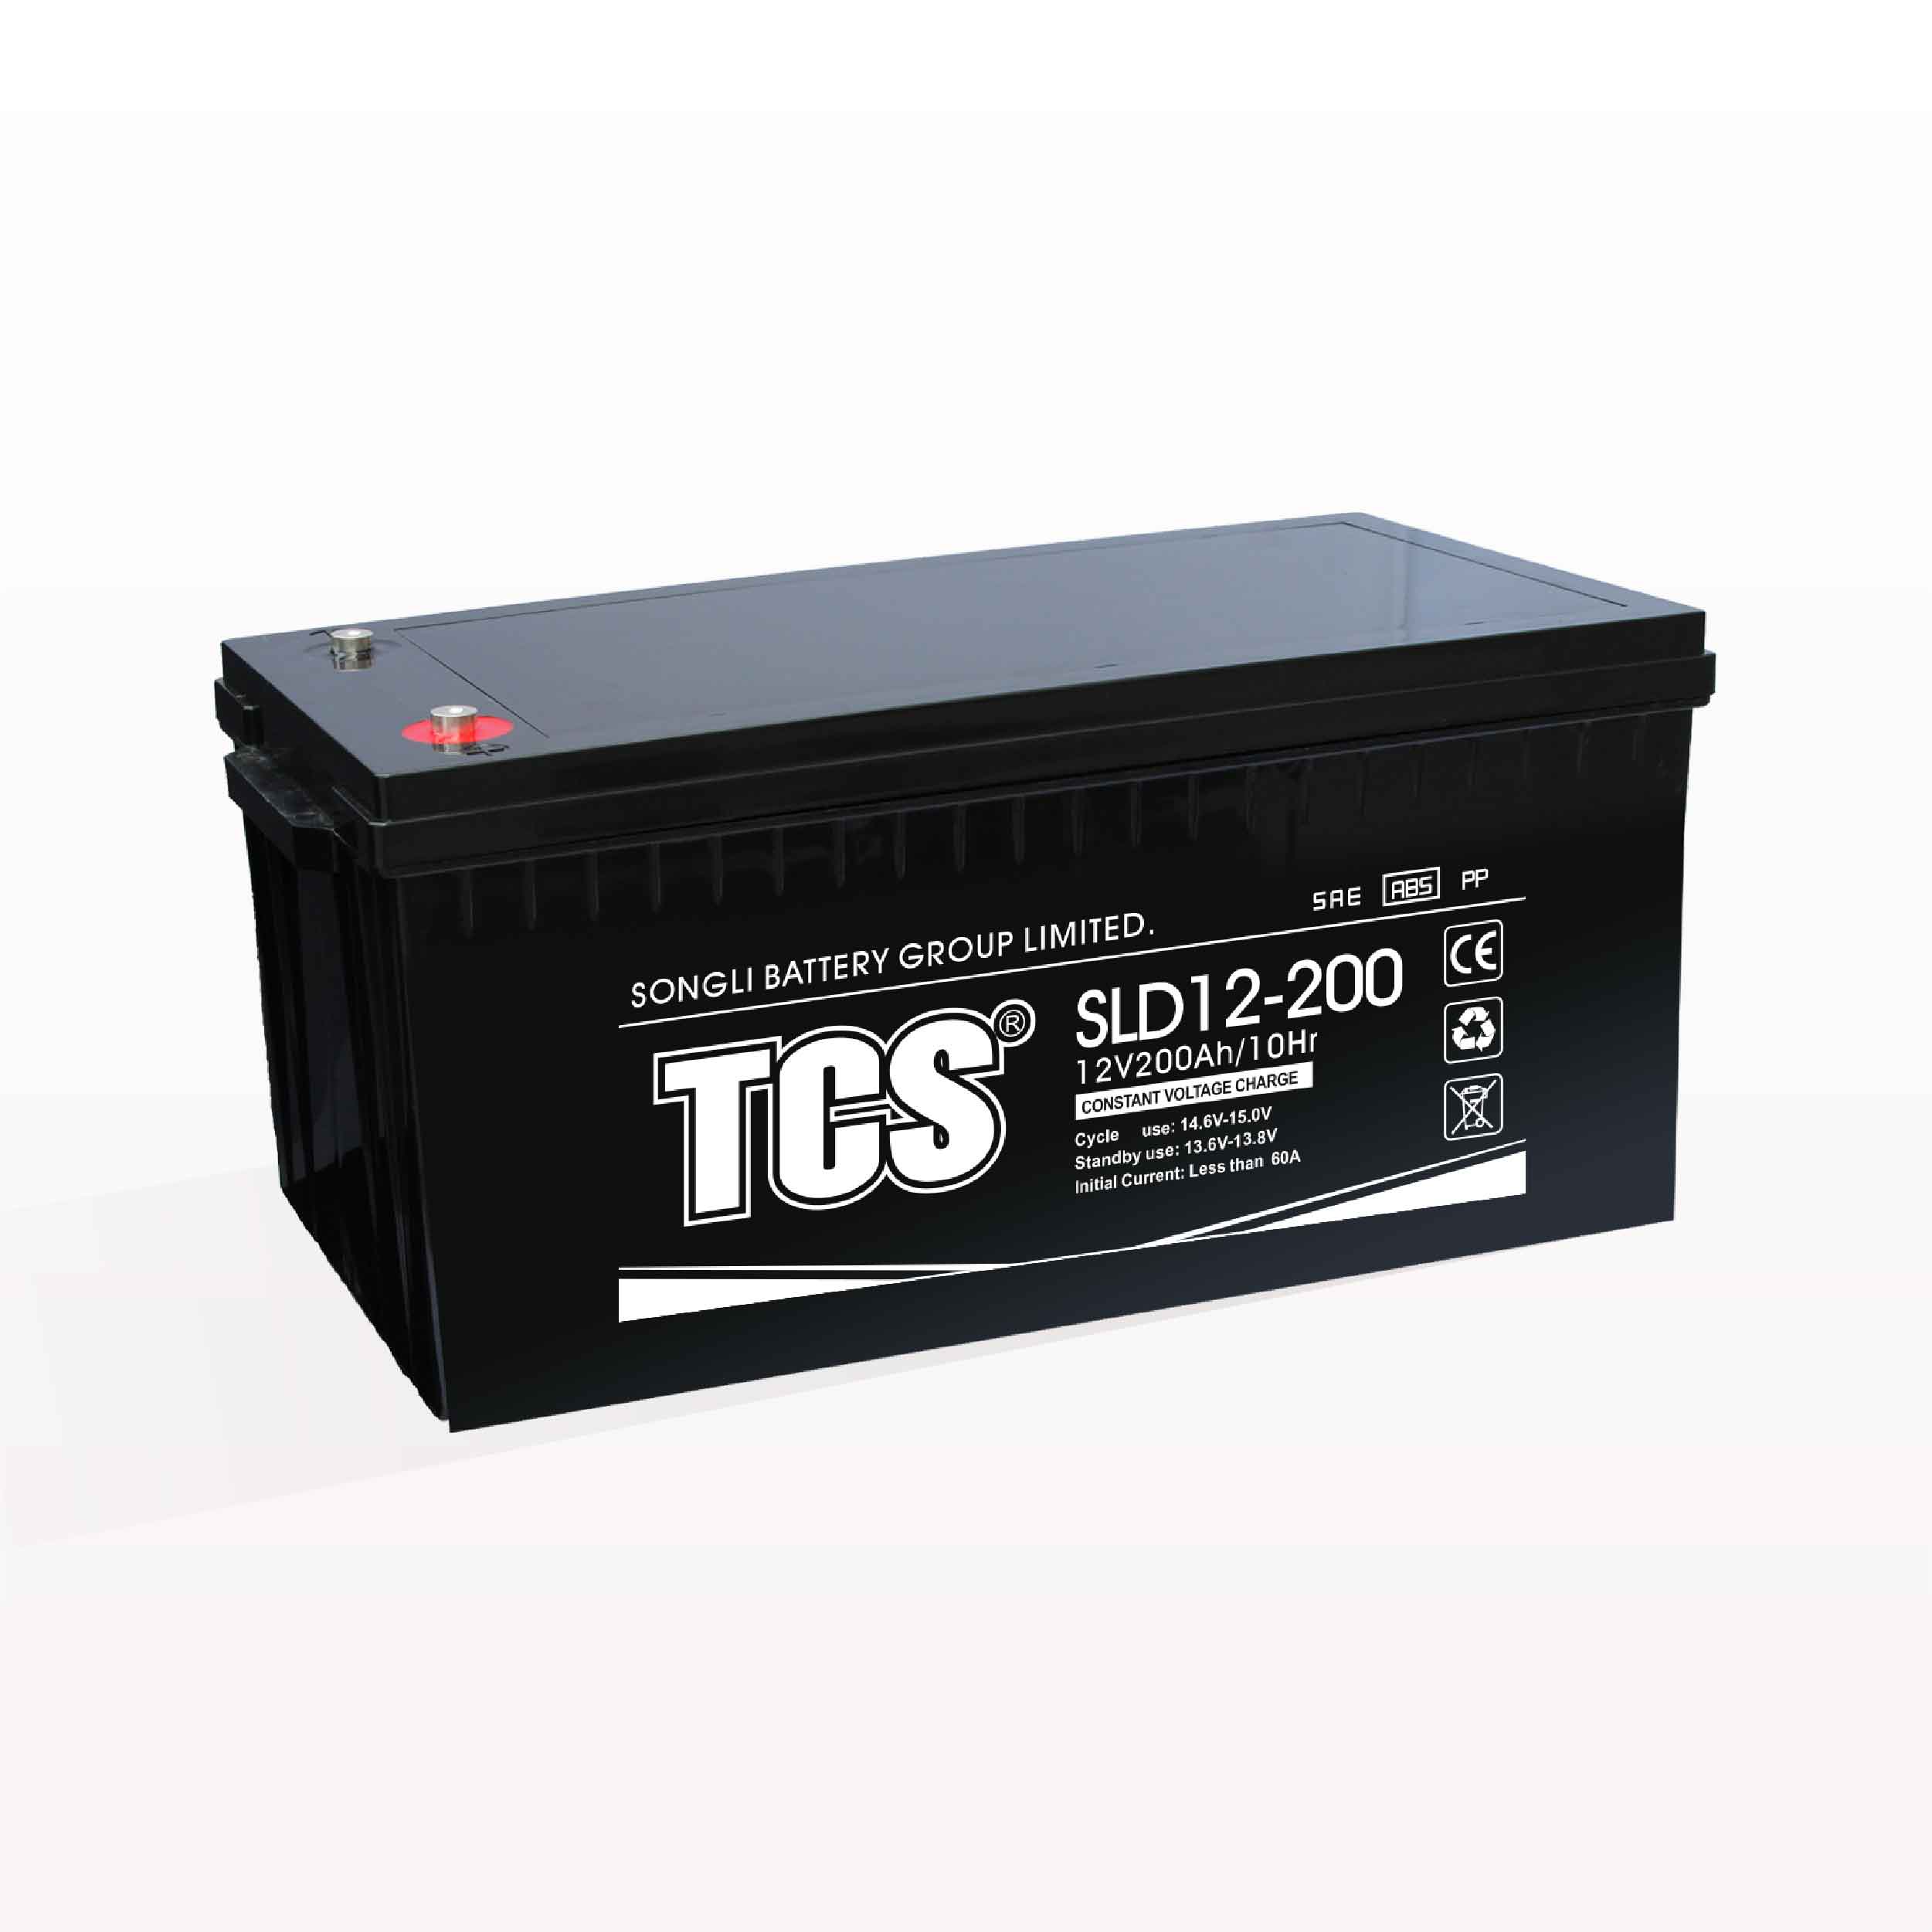 储能电池深循环系列 SLD12-200 Featured Image